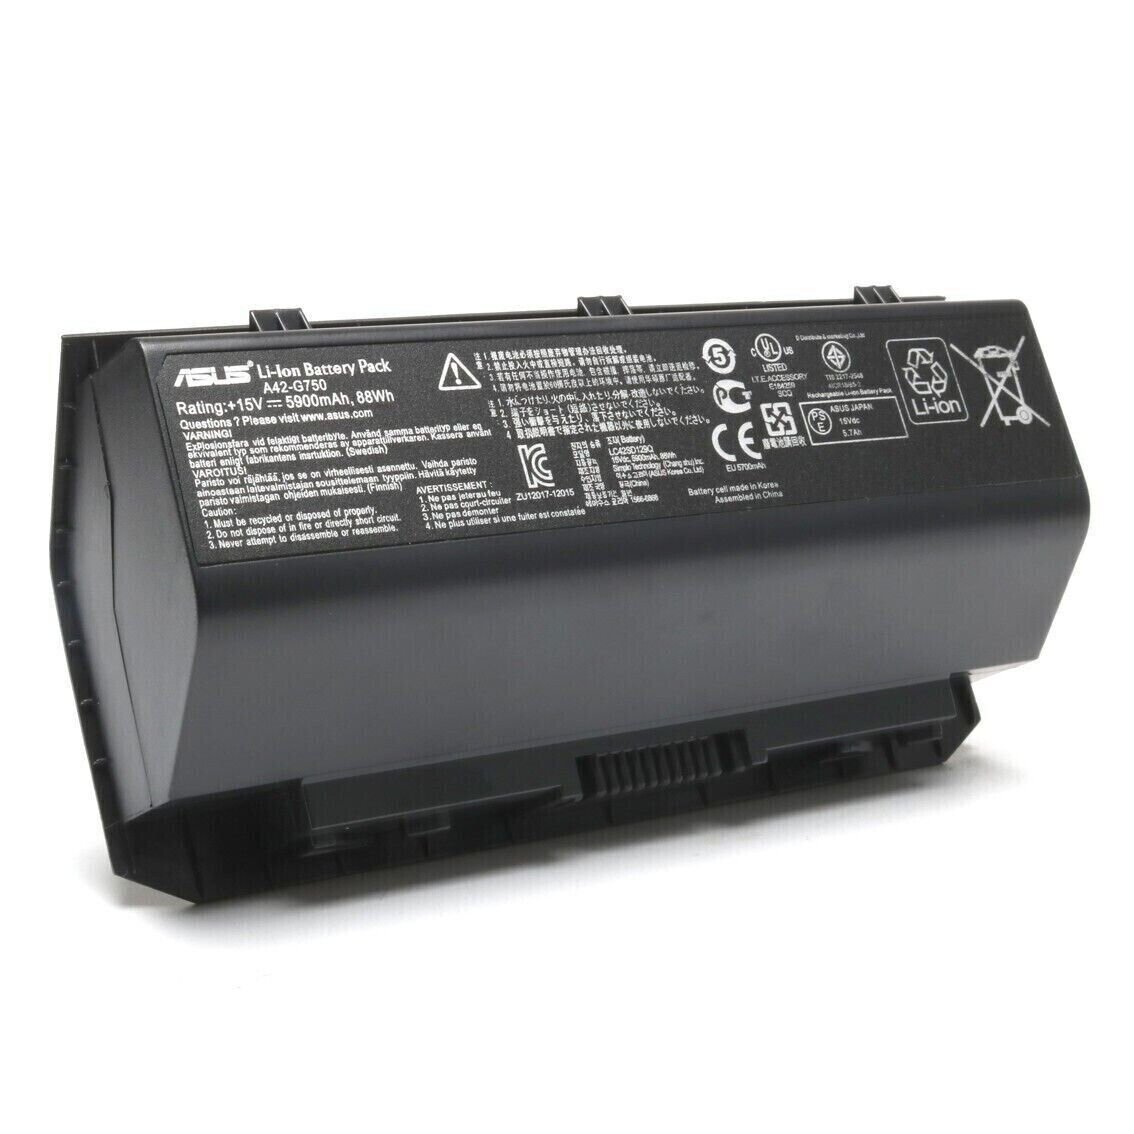 Genuine A42-G750 Laptop Battery For ASUS ROG G750 G750J G750JM G750JW A42G750